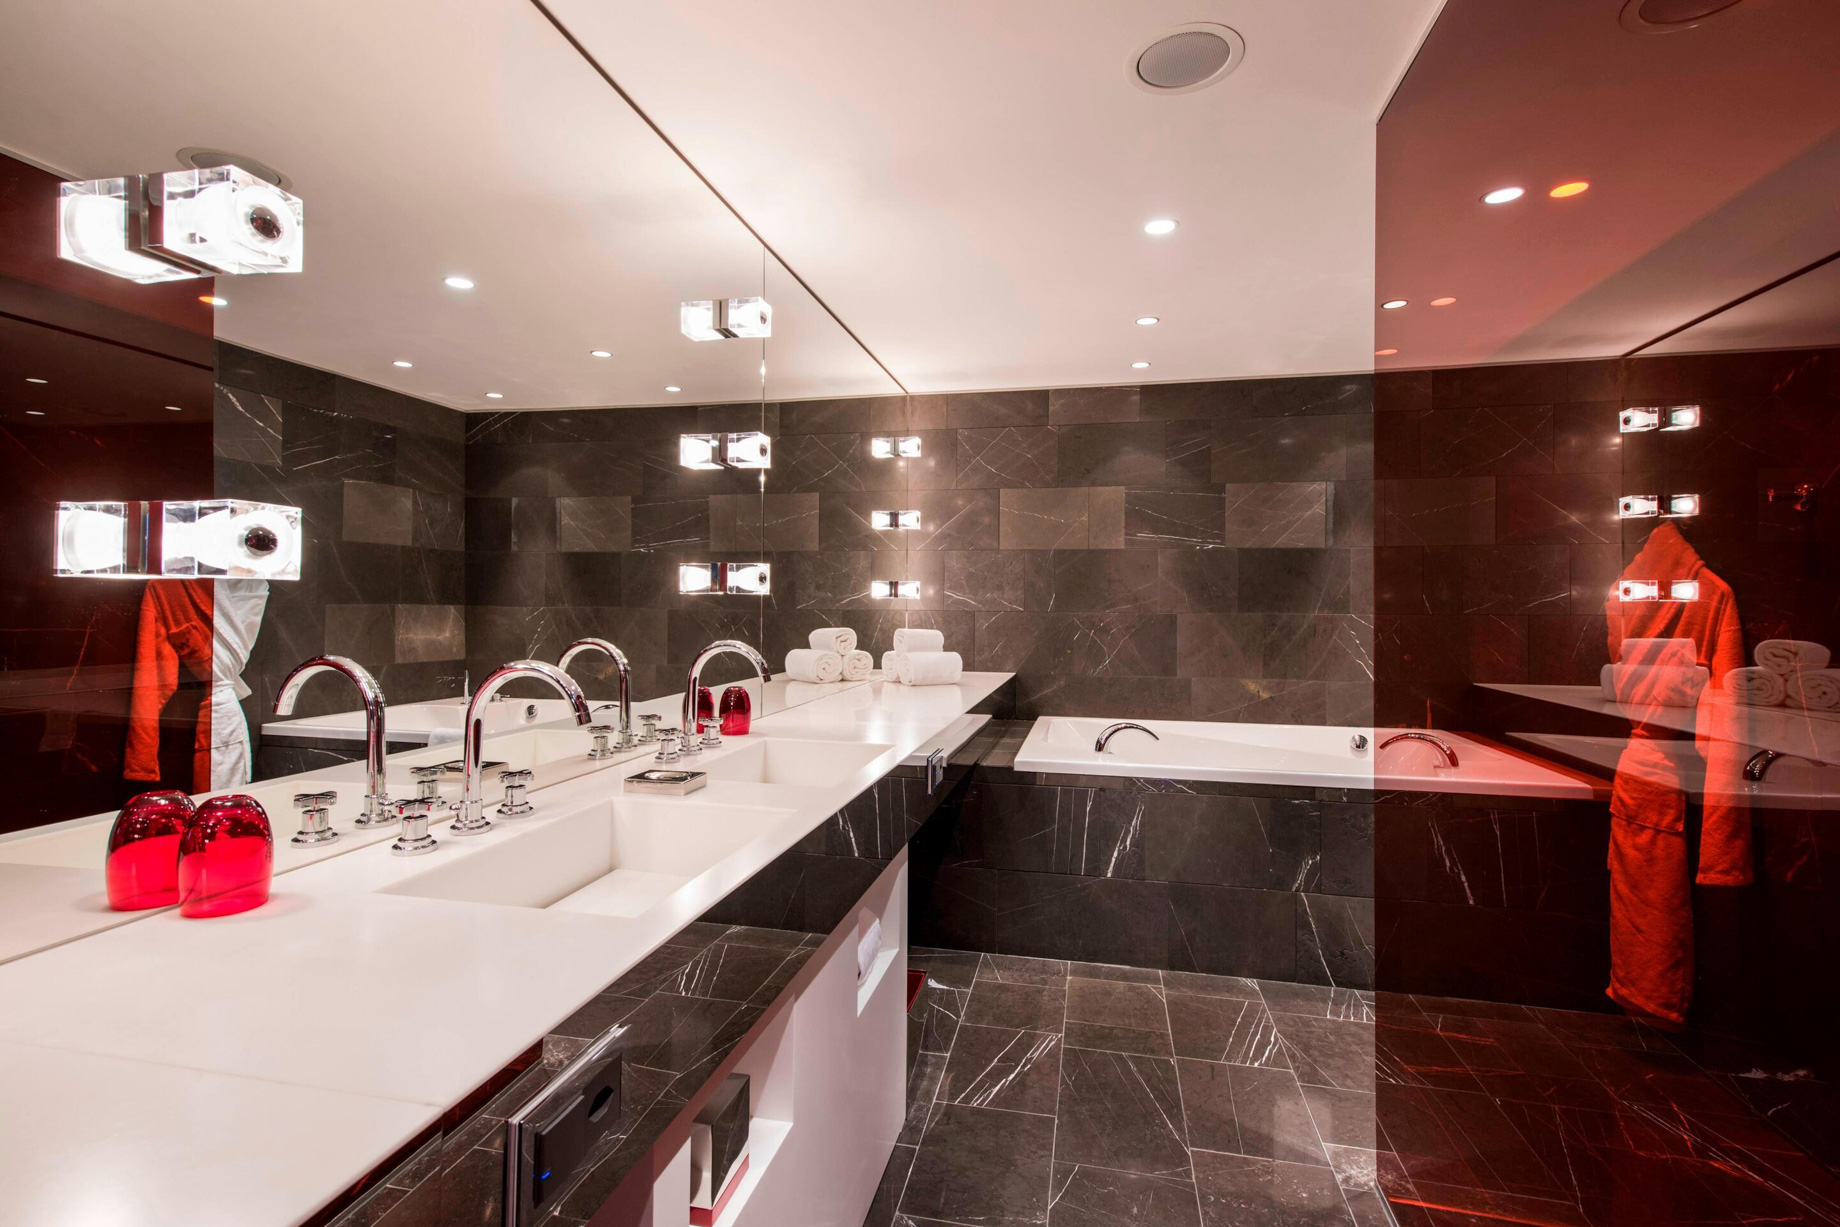 W Verbier Hotel – Verbier, Switzerland – WOW Suite Bathroom Vanity